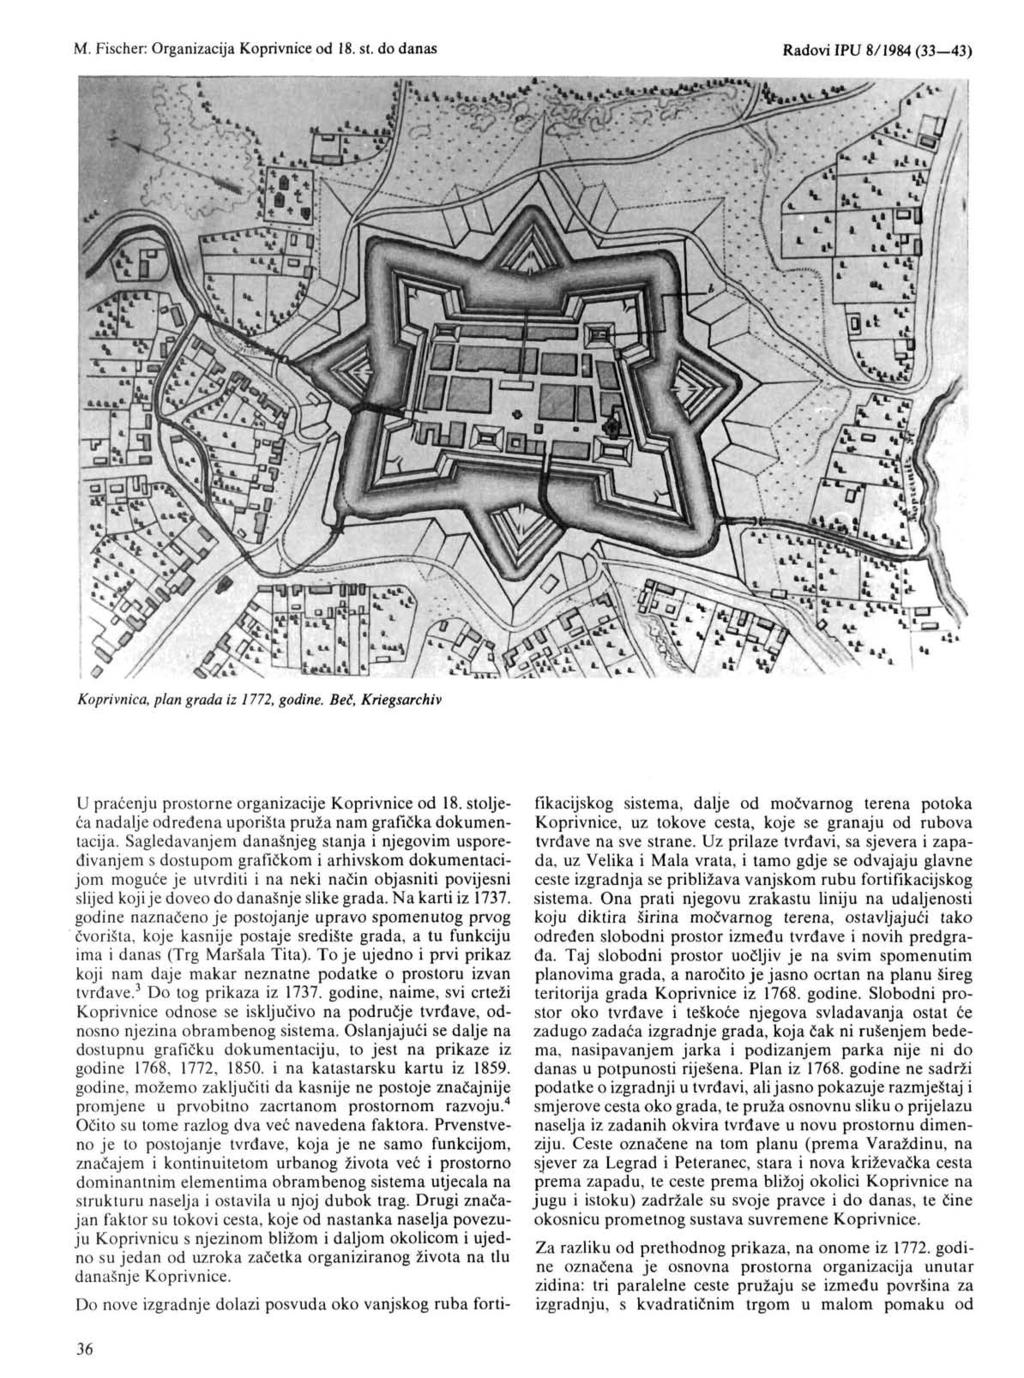 Koprivnica, plan grada iz 1772, godine. Beč, Kriegsarchiv U praćenju prostorne organizacije Koprivnice od 18. stoljeća nadalje određena uporišta pruža nam grafička dokumentacija.